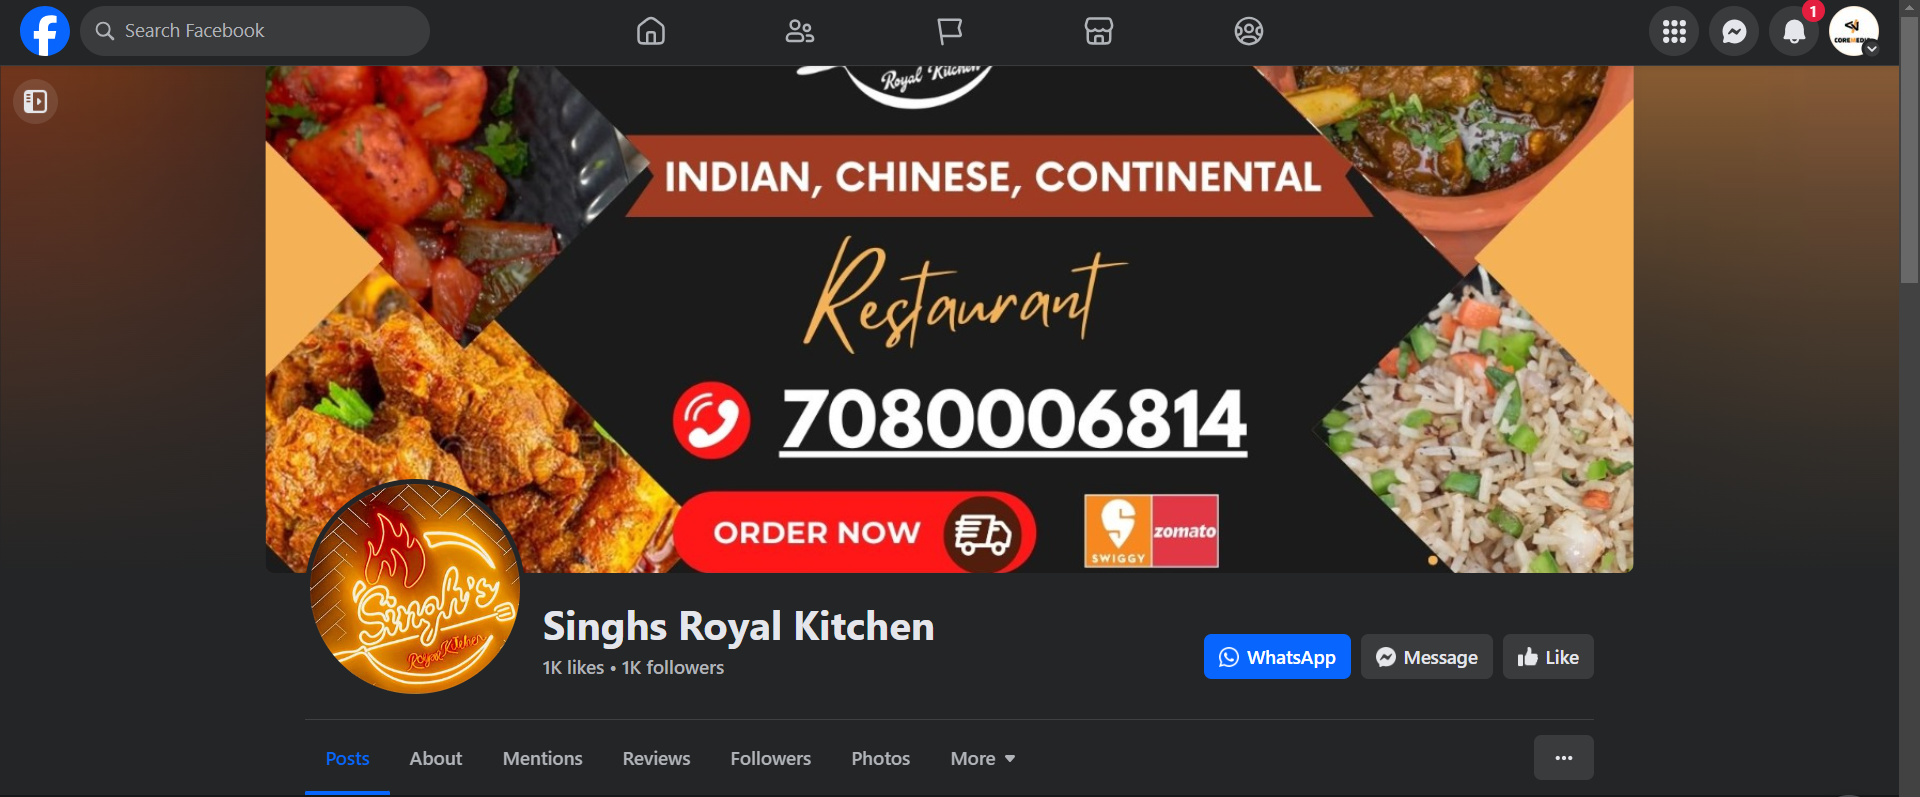 Singhs Royal Kitchen